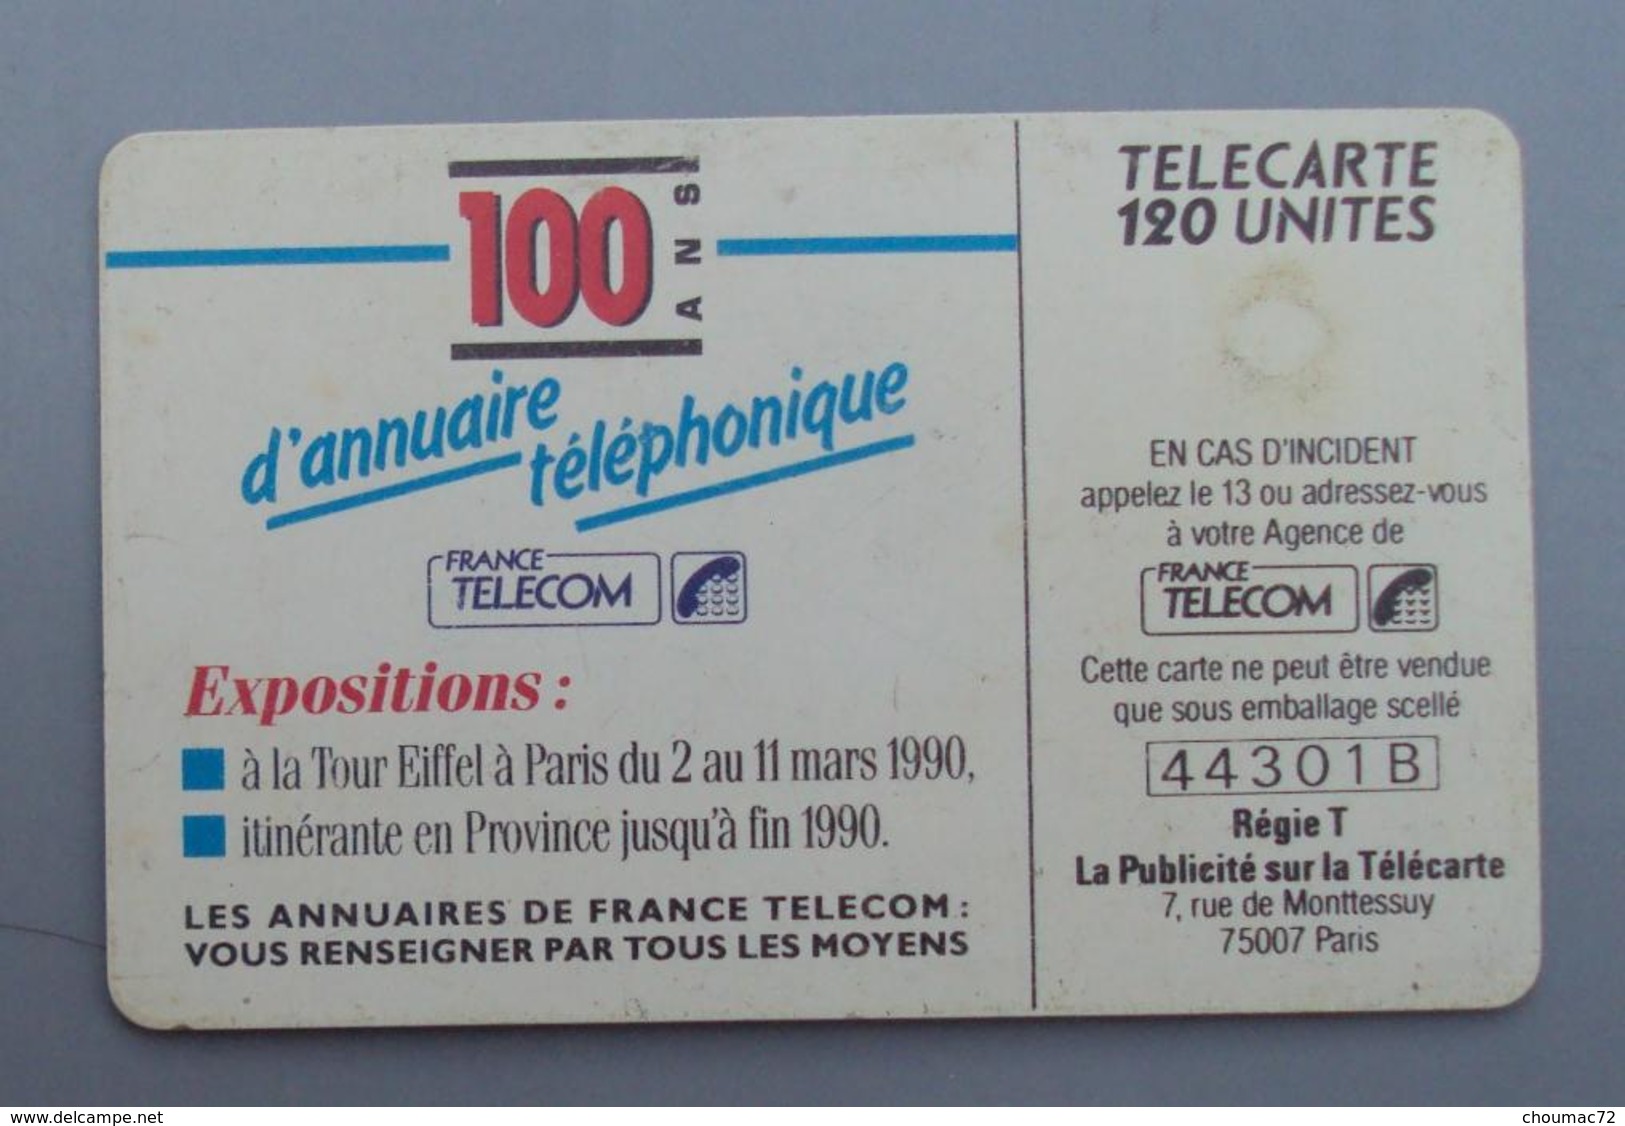 087, Télécarte Publique 10 Ans D'Annuaire Téléphonique 120U - 1990